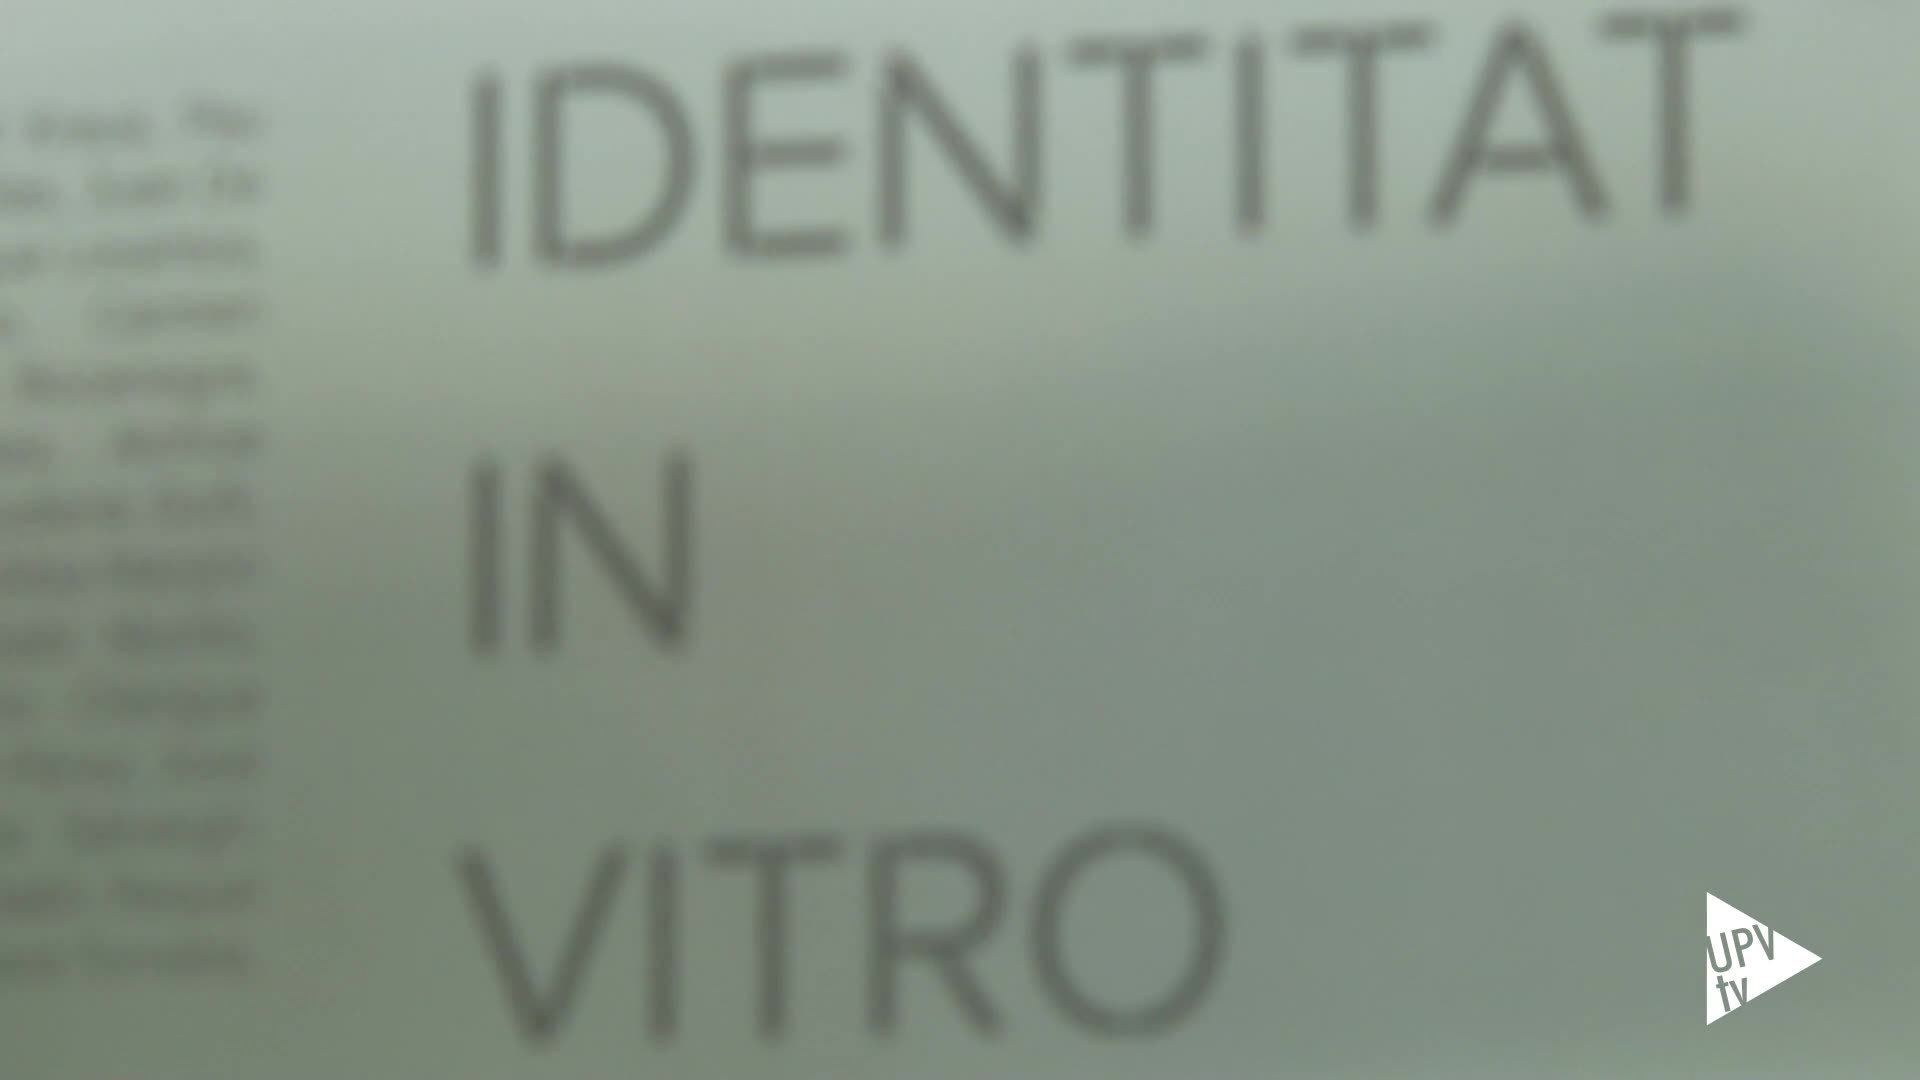 10-05-2016 Identidad in vitro